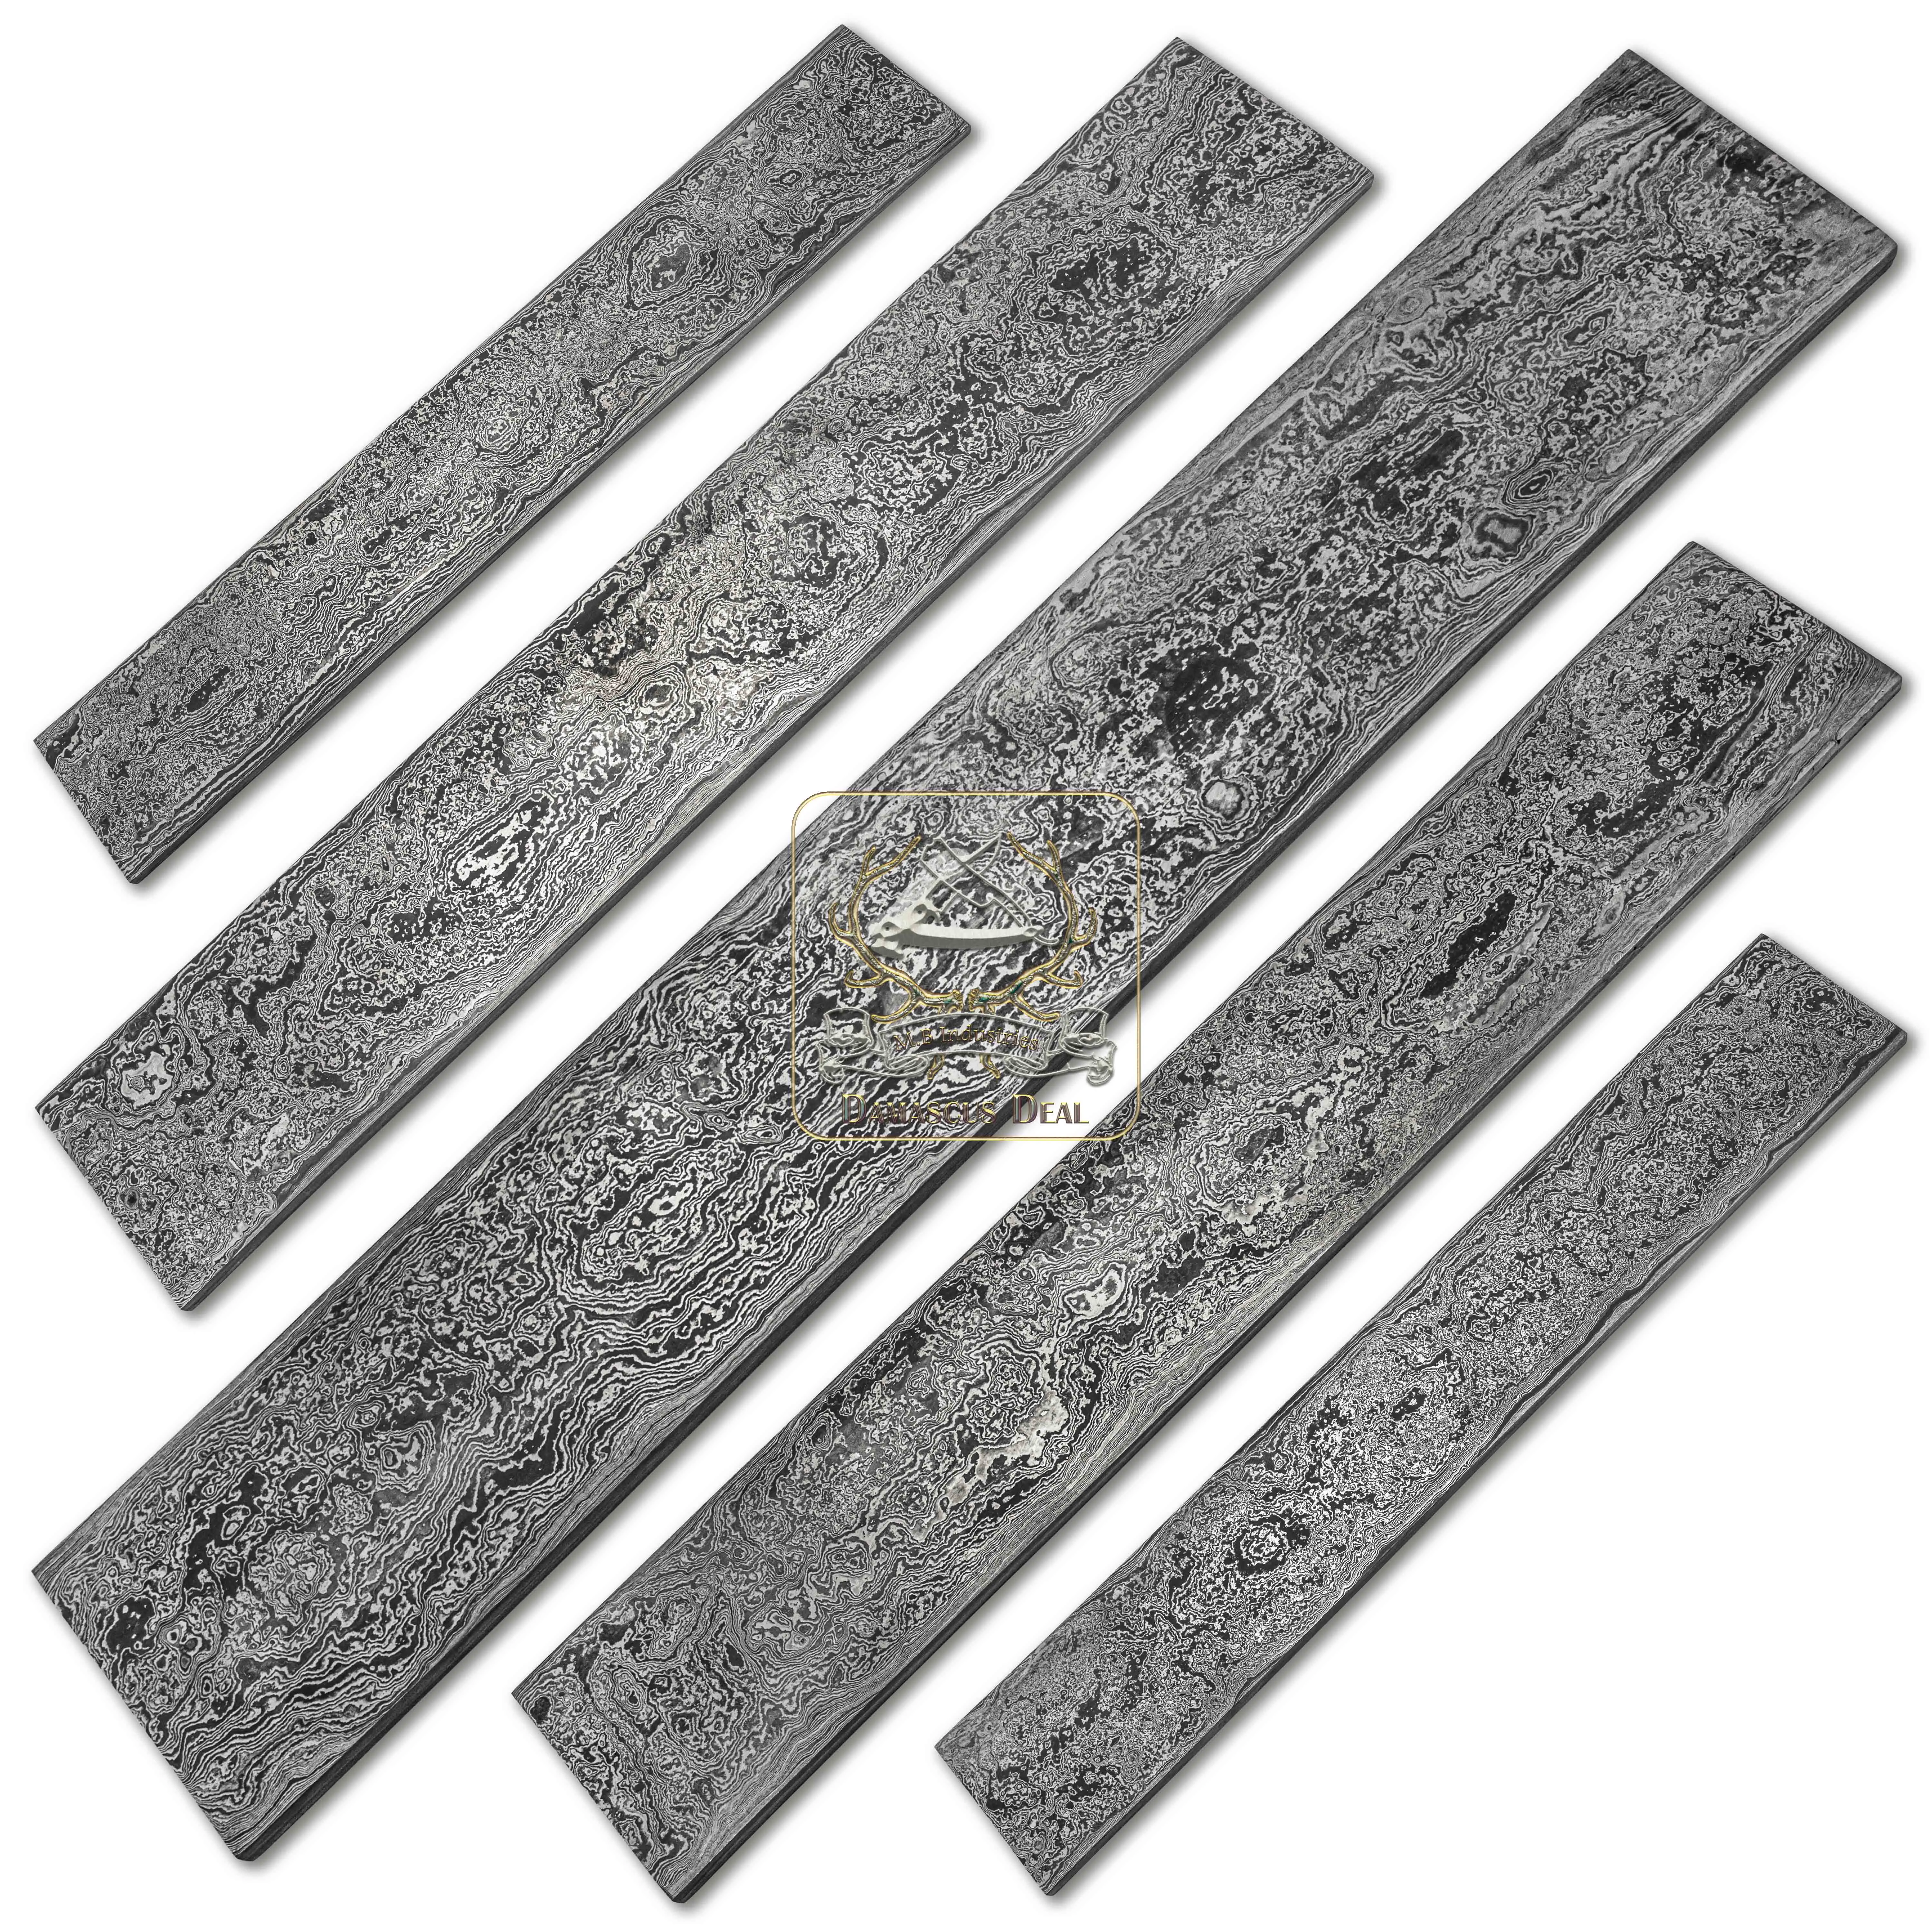 Damascus Steel Billet Random Pattern DD-Random-502 for Knife Making Hand Forged Carbon Steel Hardness 58-62 HRC Billet